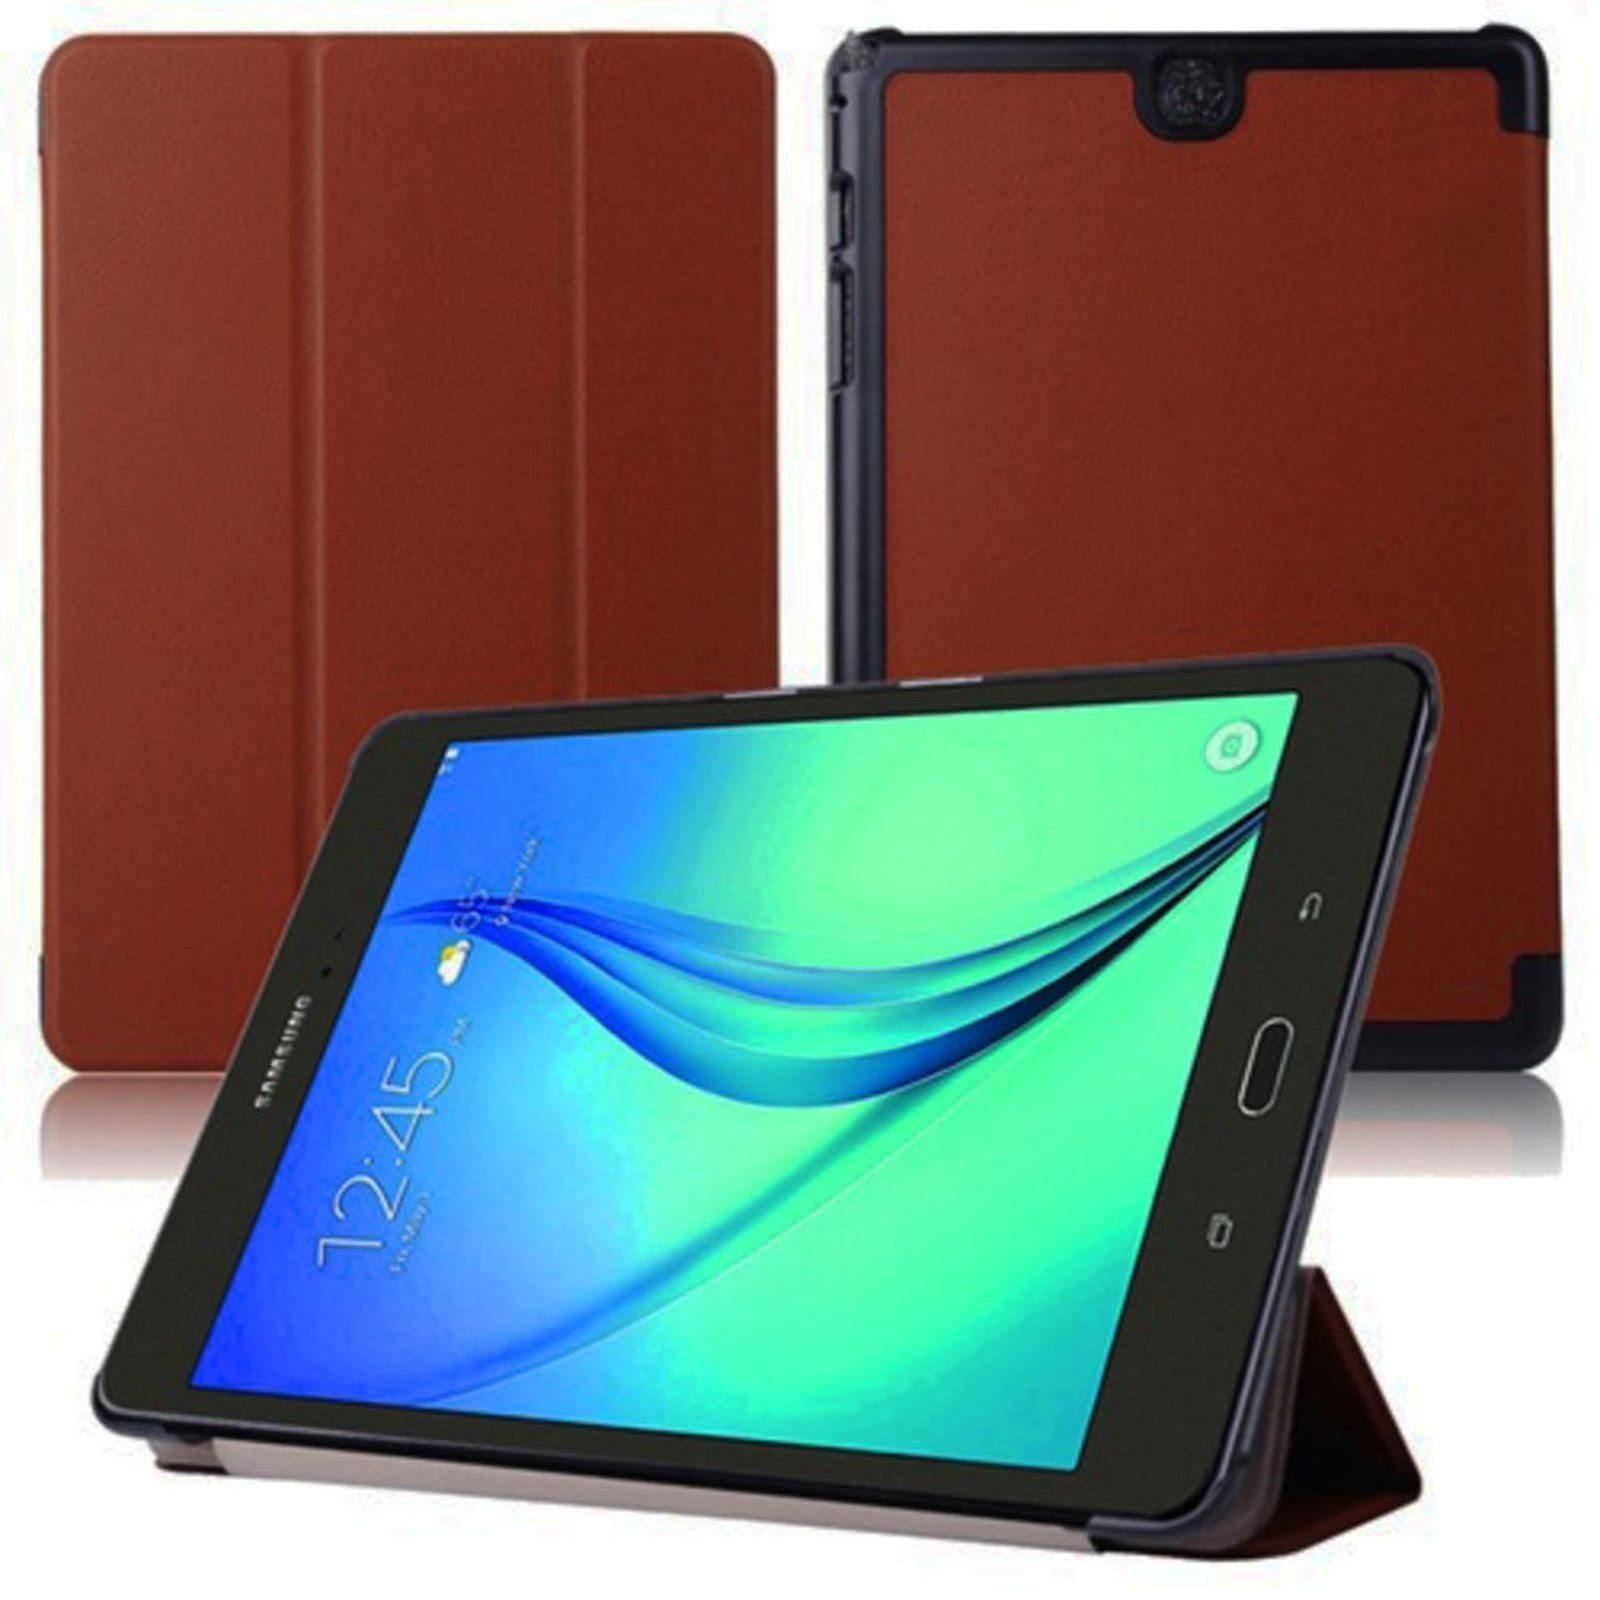 Lobwerk Tablet-Hülle Schutzhülle für Samsung Galaxy Tab A SM-T550 T551 T555  9.7 Zoll, Wake & Sleep Funktion, Sturzdämpfung, Aufstellfunktion